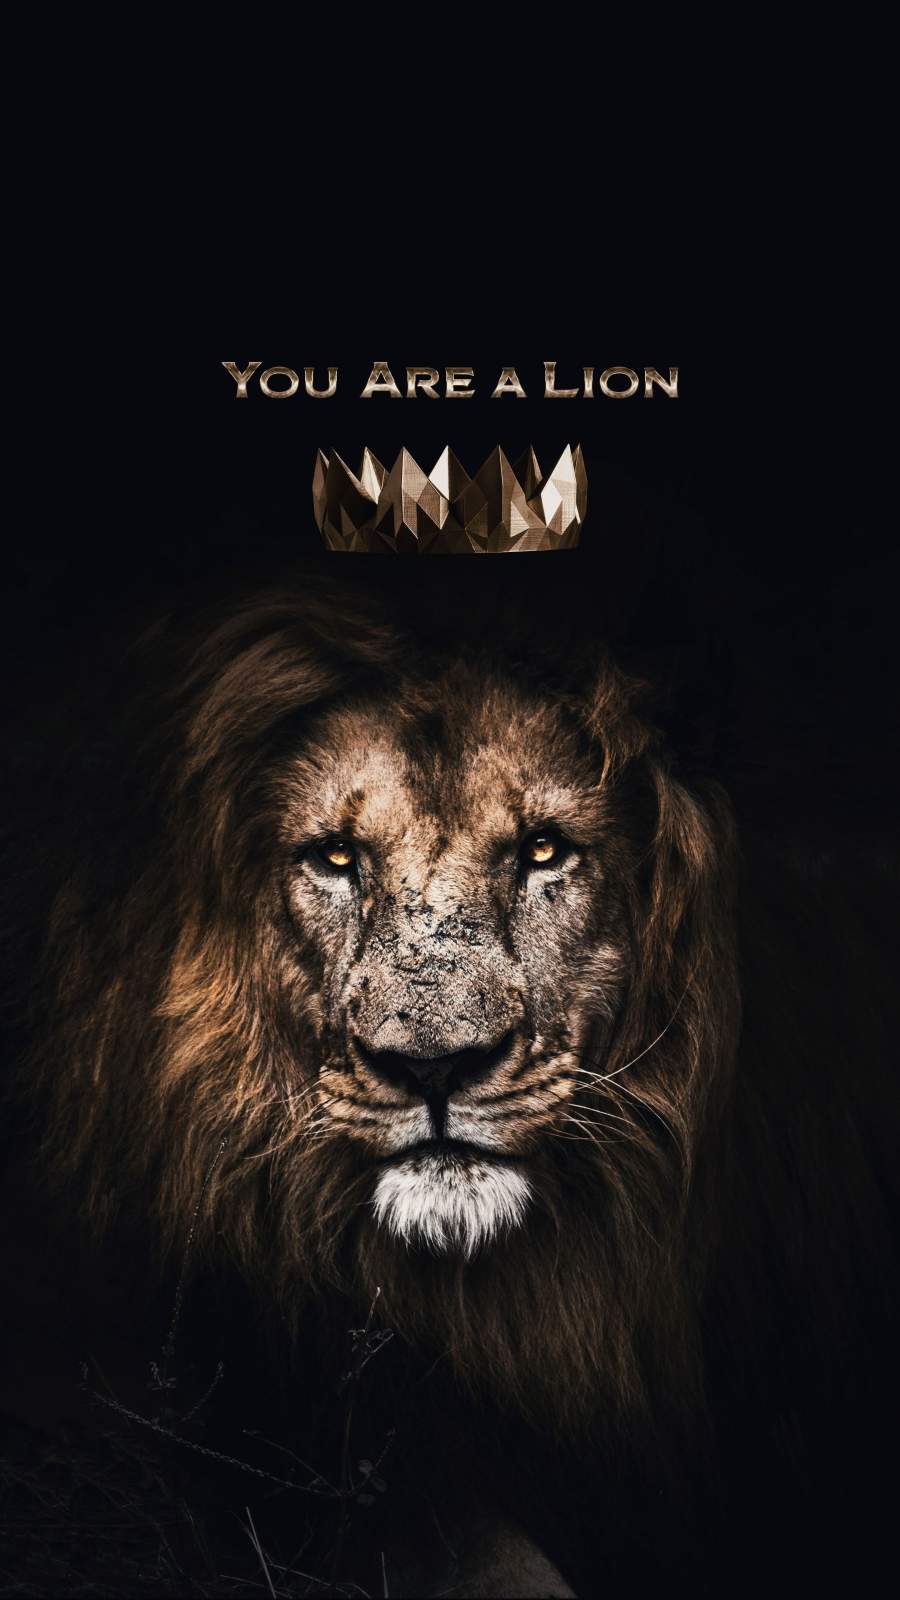 Bạn là một con sư tử - một con vật được tôn vinh với sức mạnh, uy nghi và lòng dũng cảm. Hãy vươn lên trên trời cao để thăng hoa, một chiếc iPhone chứa đựng những hình nền mang thông điệp tích cực này sẽ giúp bạn giữ mãi một tinh thần luôn tự tin và kiên định.